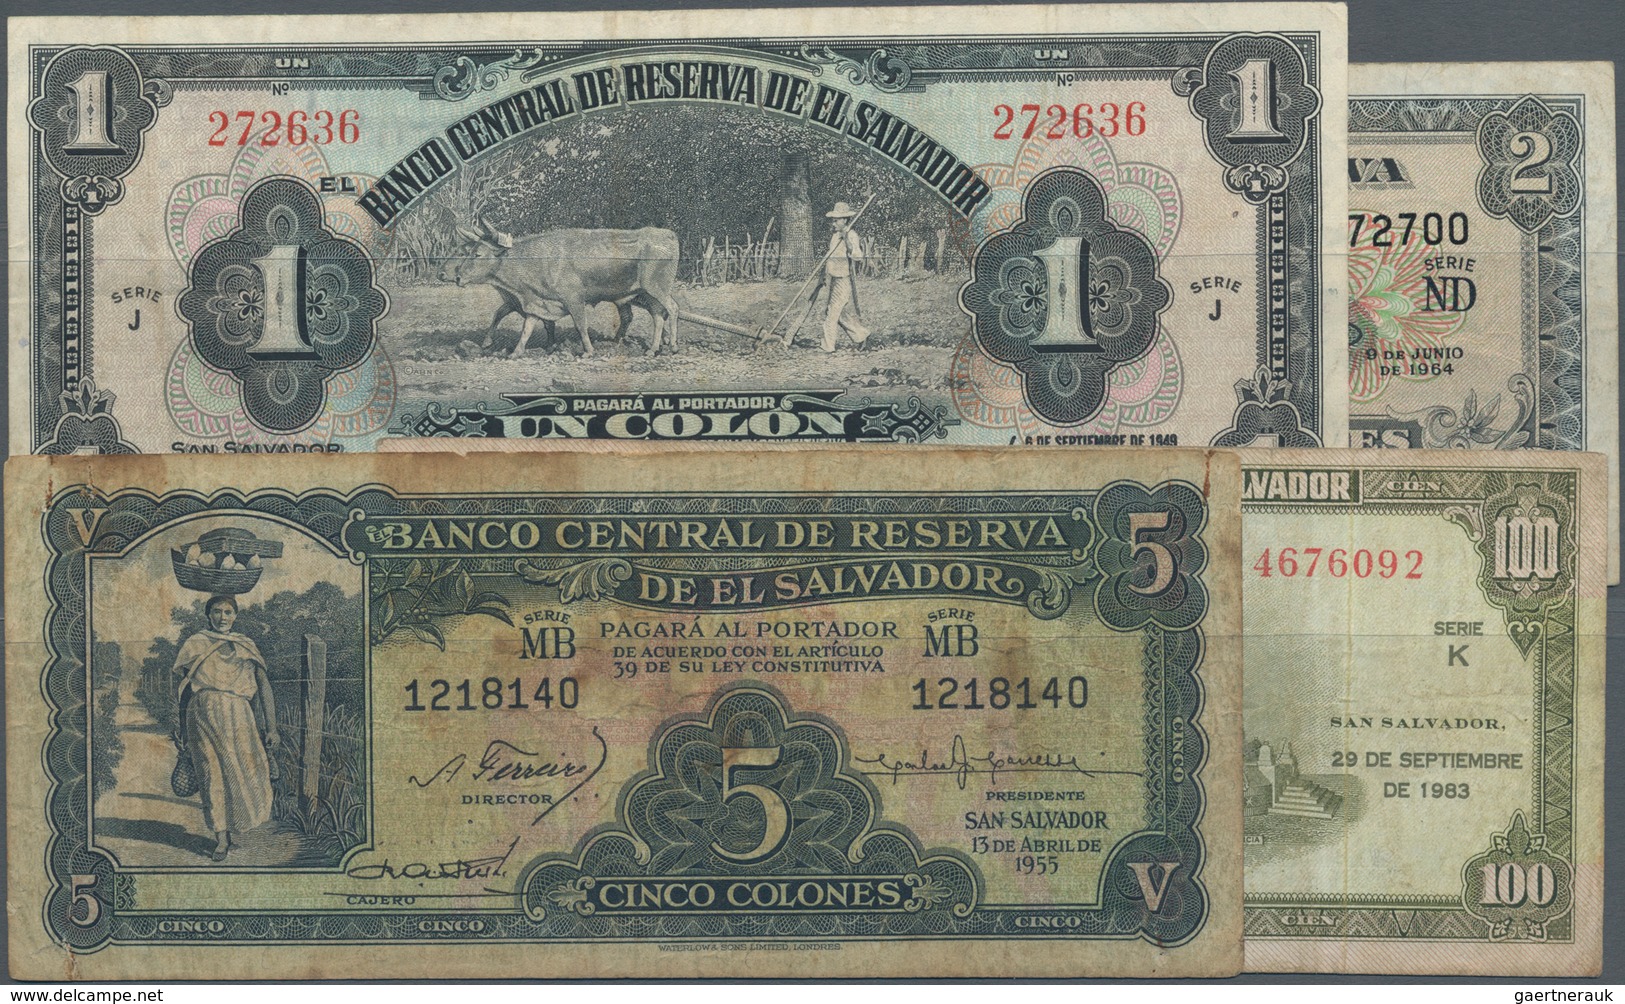 El Salvador: Nice Set With 4 Banknotes Containing 1 Colon 1949 P.83a (VF), 2 Colones 1964 P.101 (F+) - El Salvador